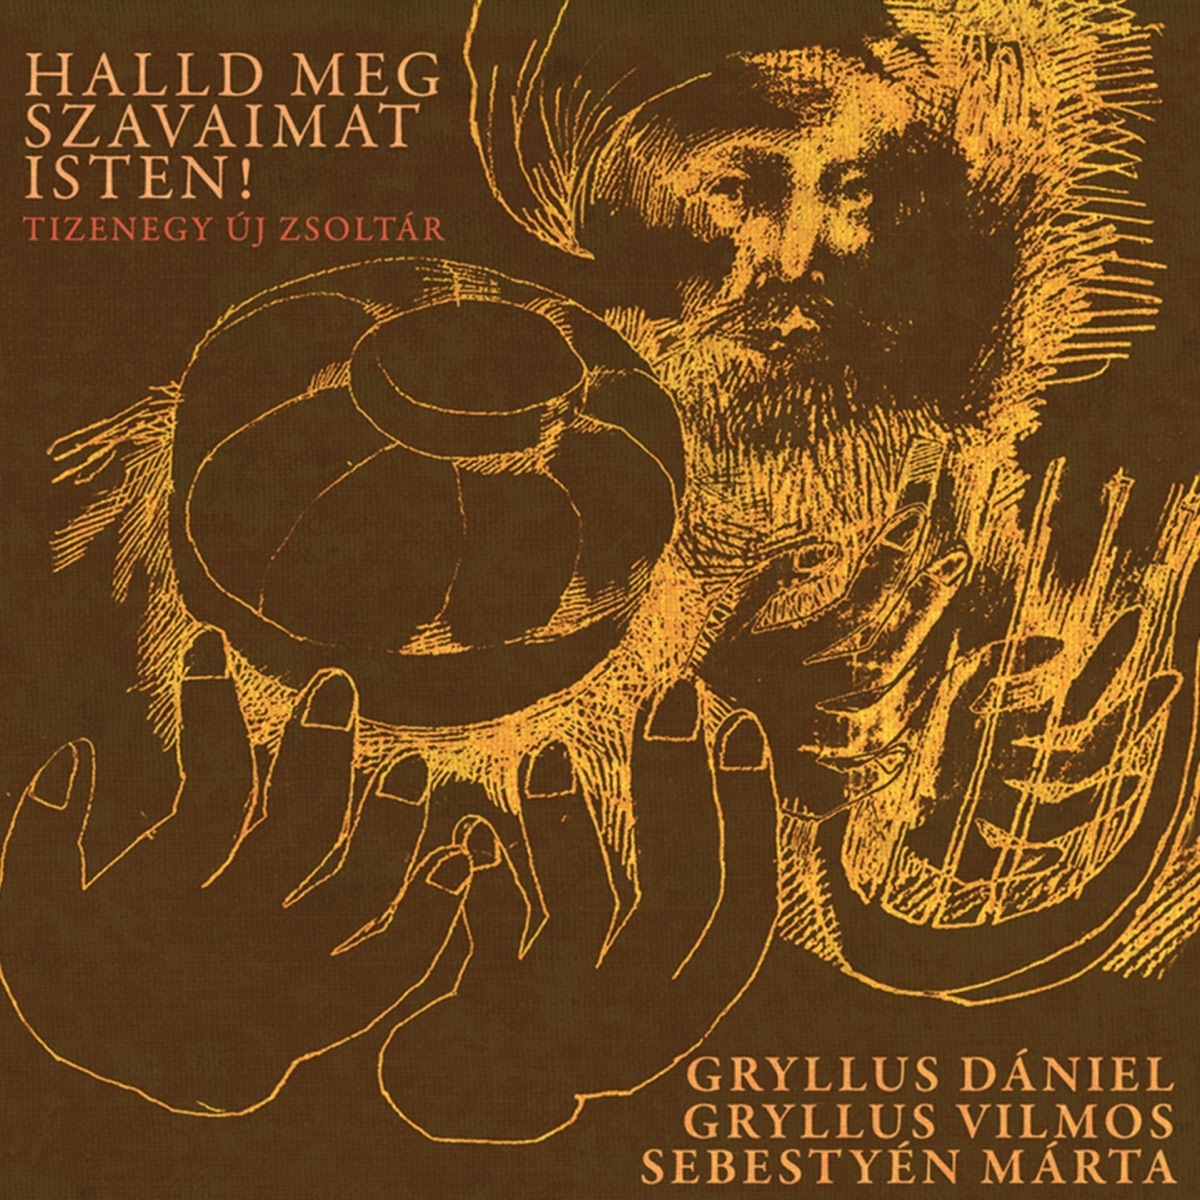 Volt Egyszer Volt Egy Kis Zsidó (Live) - Album by Gryllus Dániel, Gryllus  Vilmos & Szalóki A'gi - Apple Music